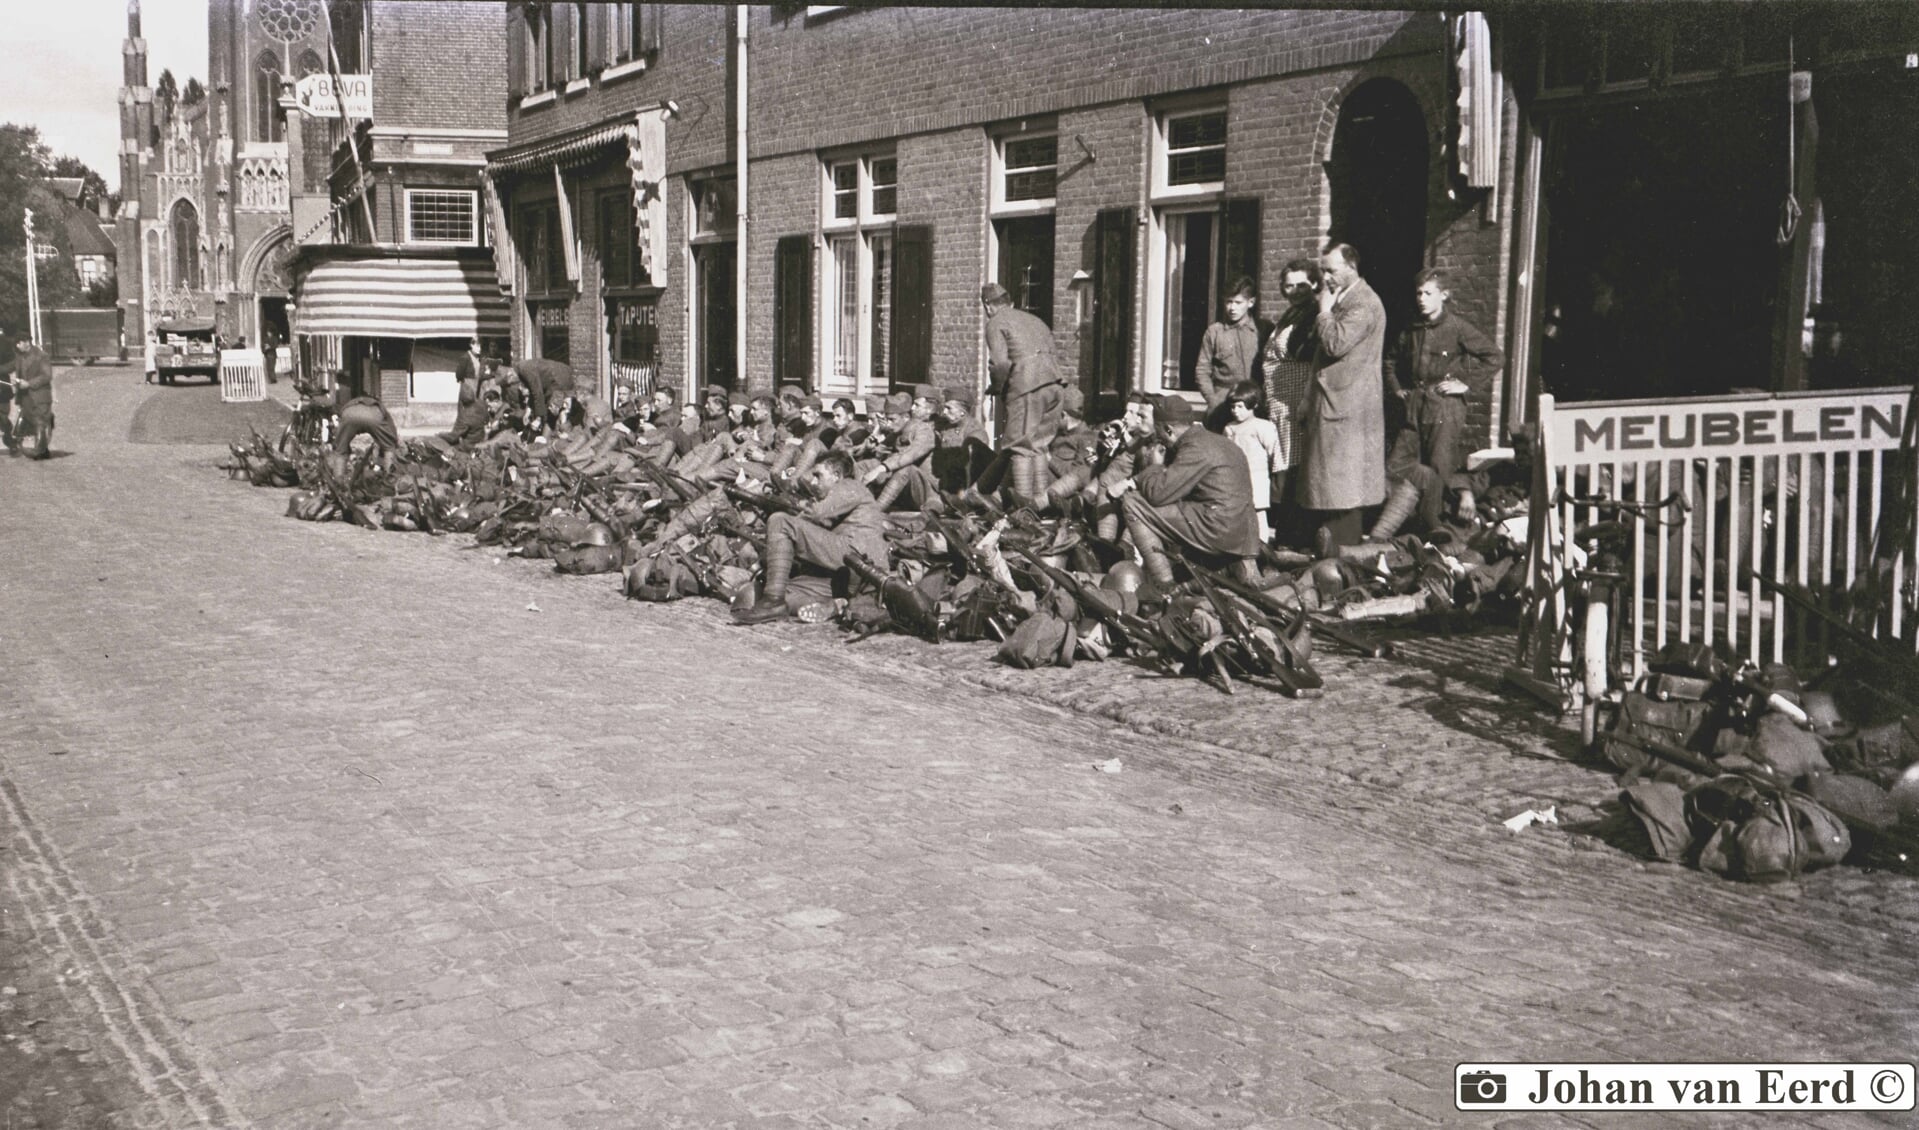 Een prachtig sfeerbeeld van wachtende Nederlandse soldaten tijdens de mobilisatie, door Johan van Eerd in 1939 vastgelegd.